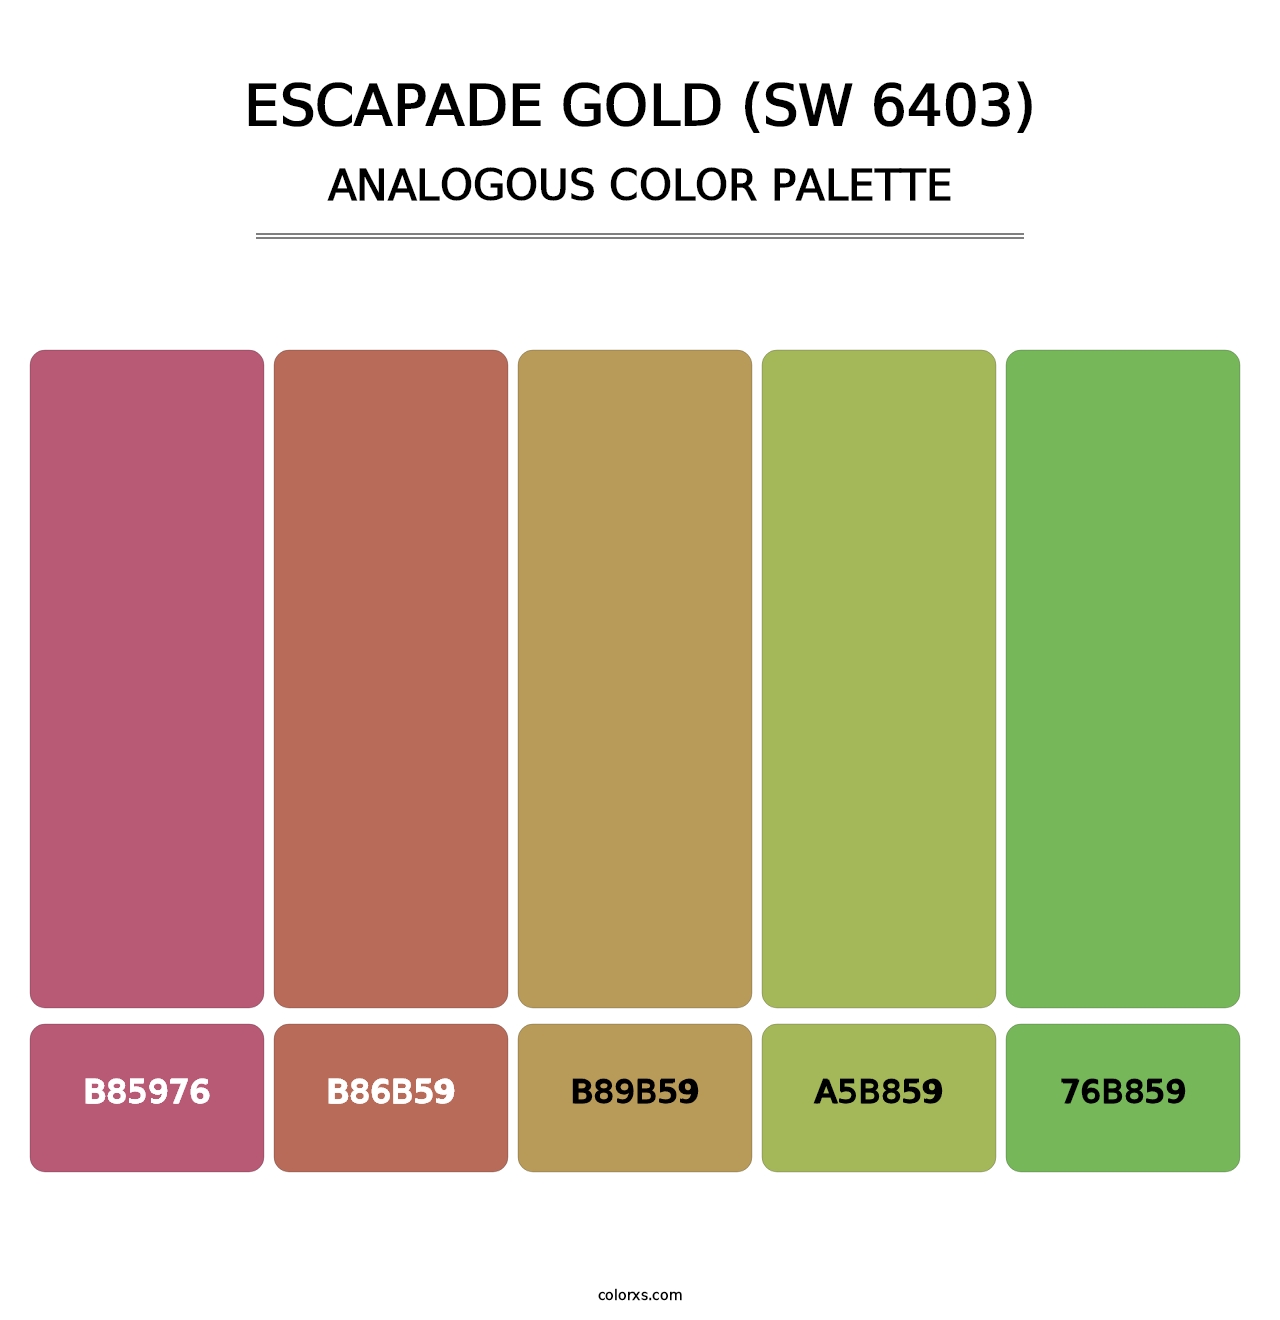 Escapade Gold (SW 6403) - Analogous Color Palette